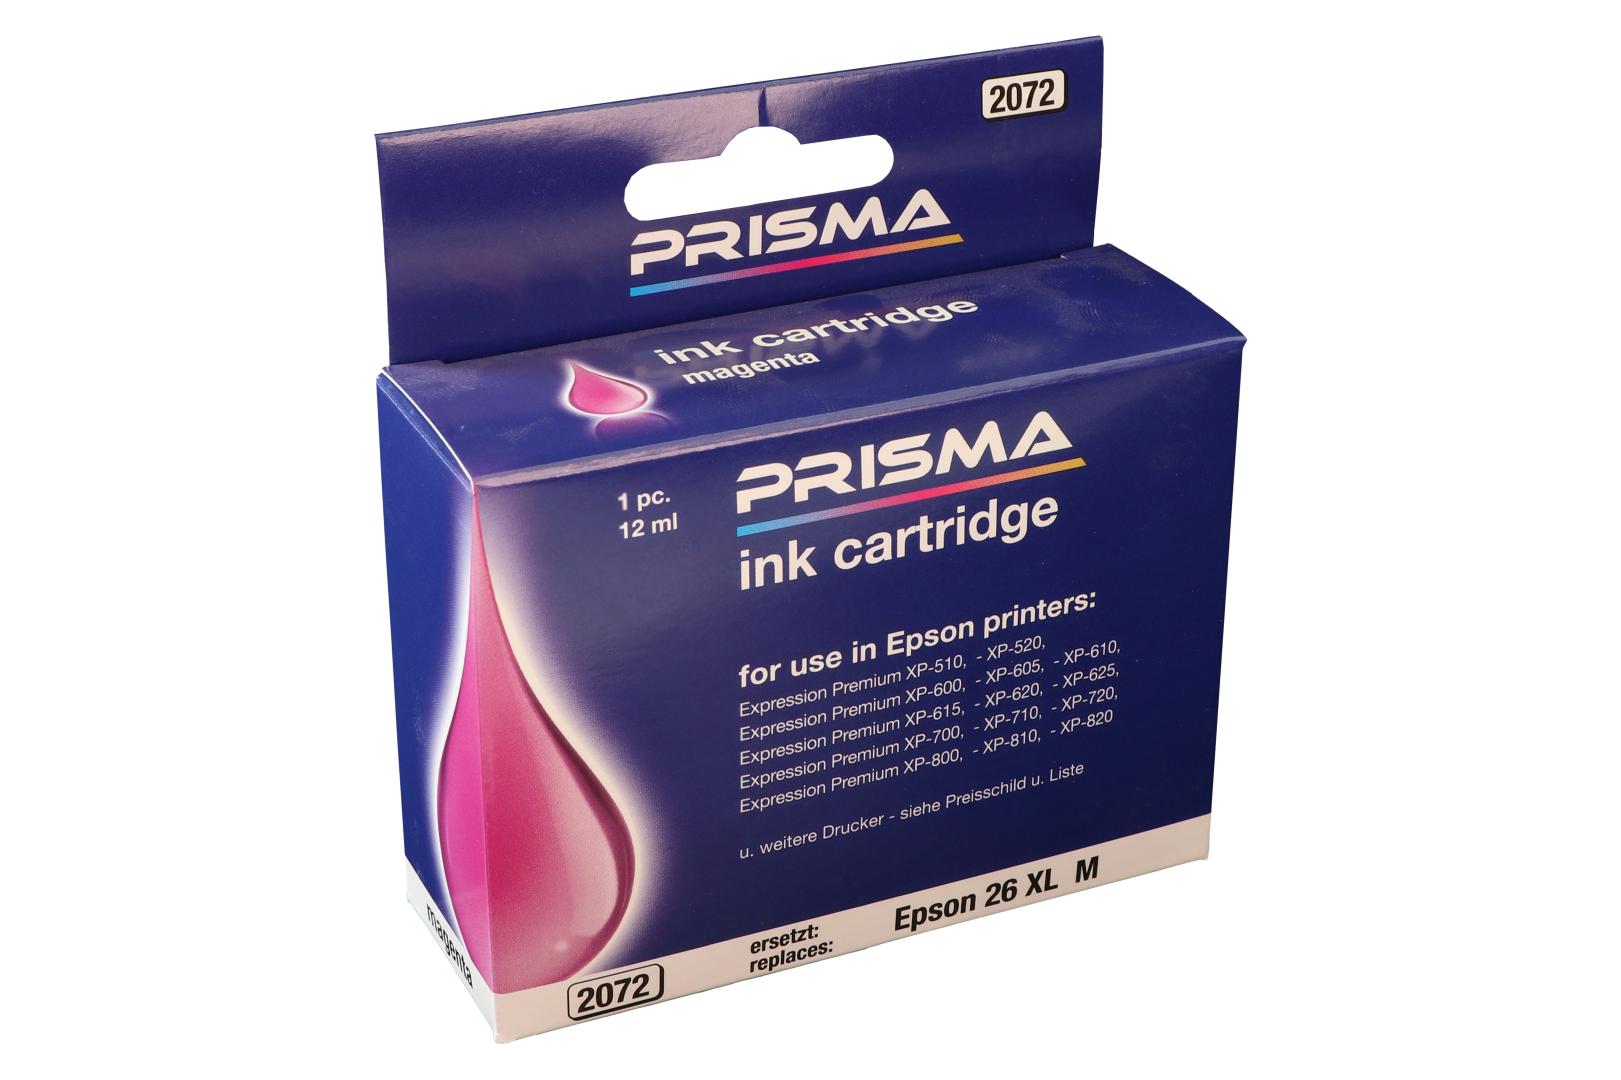 PRISMA 2072 Druckerpatrone für Epson Tintenstrahldrucker, magenta, 12 ml